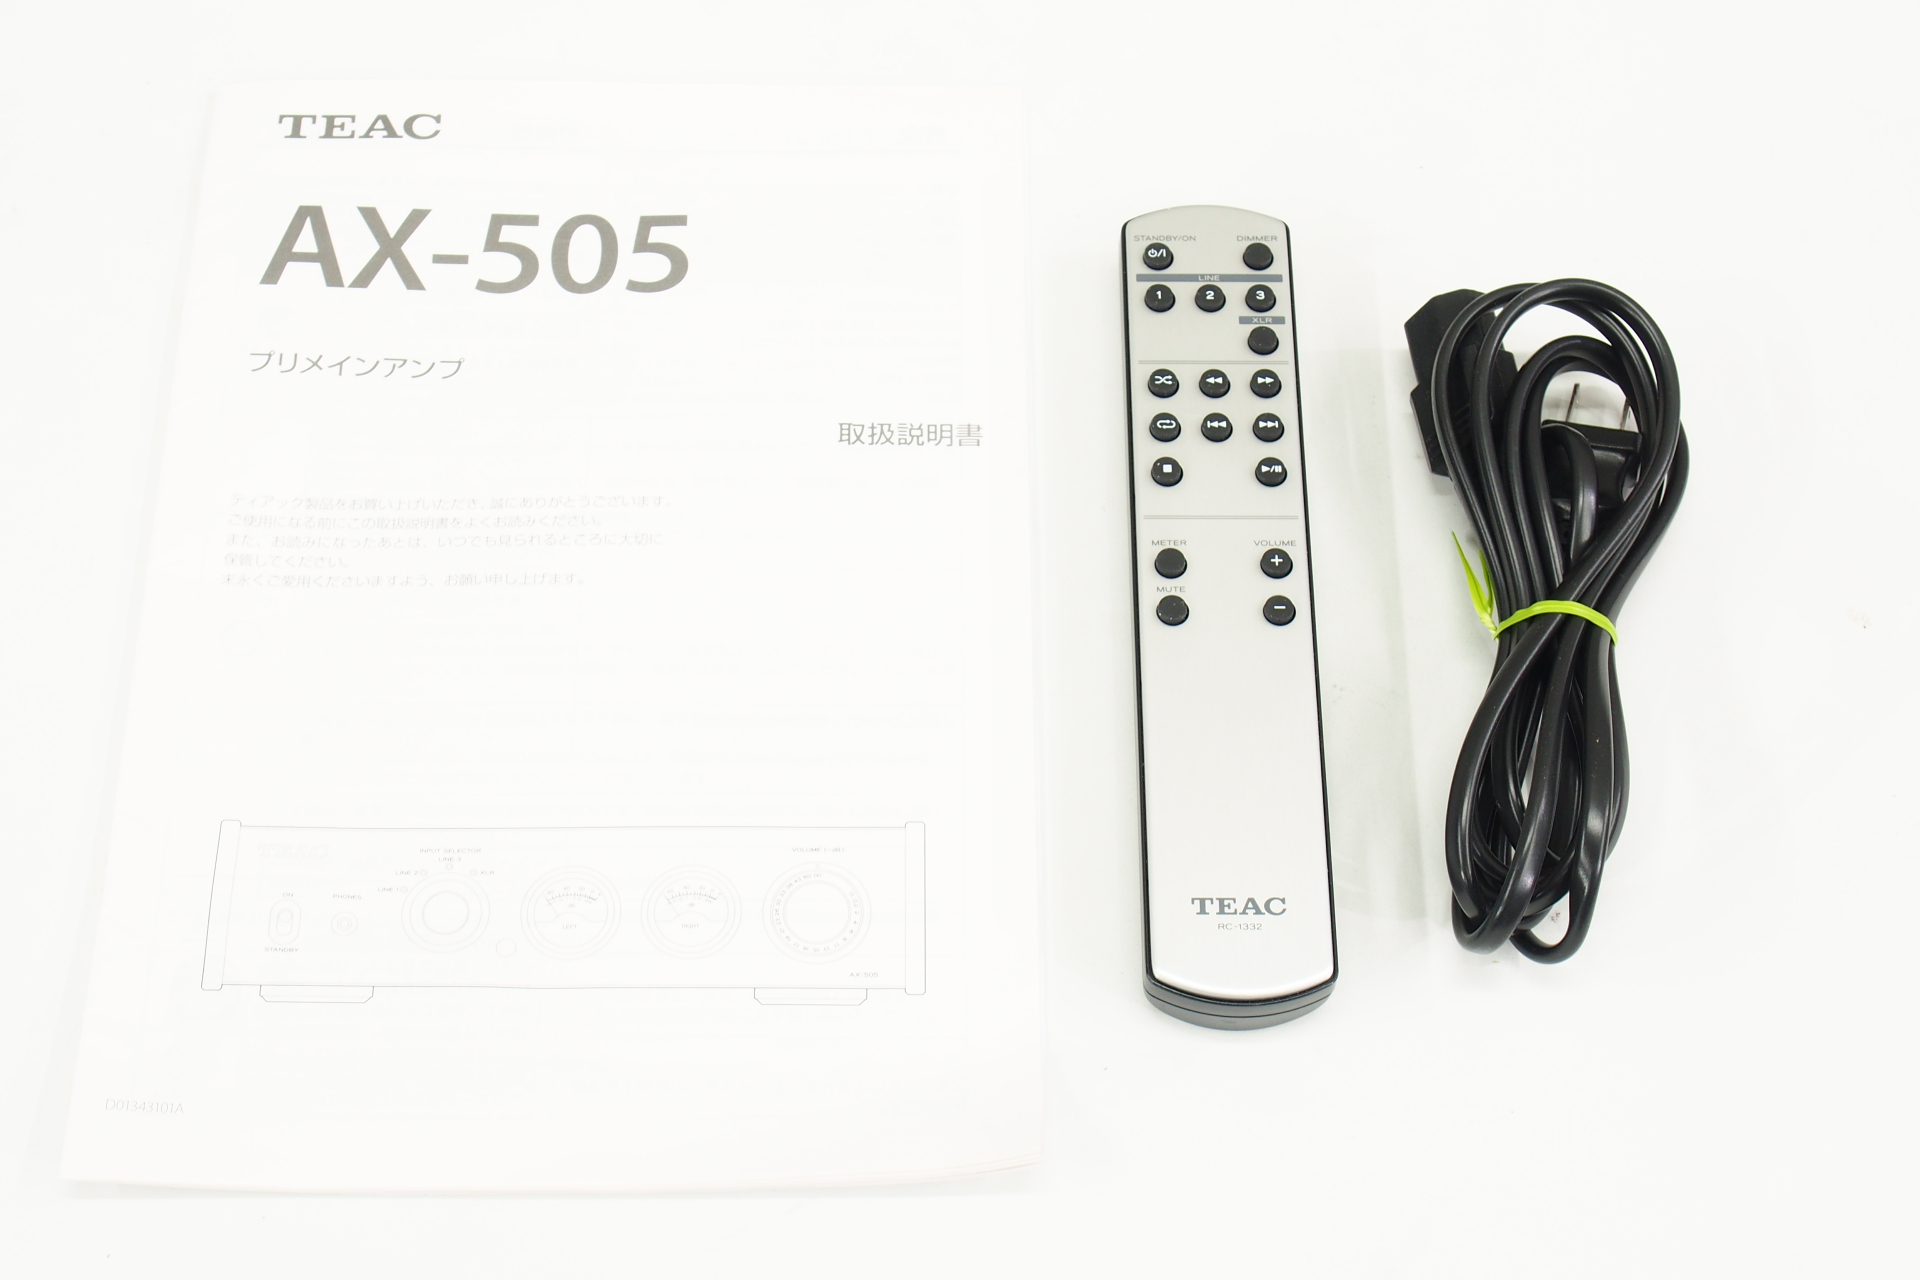 アバックWEB-SHOP / 【中古】TEAC AX-505(S)【コード01-08989